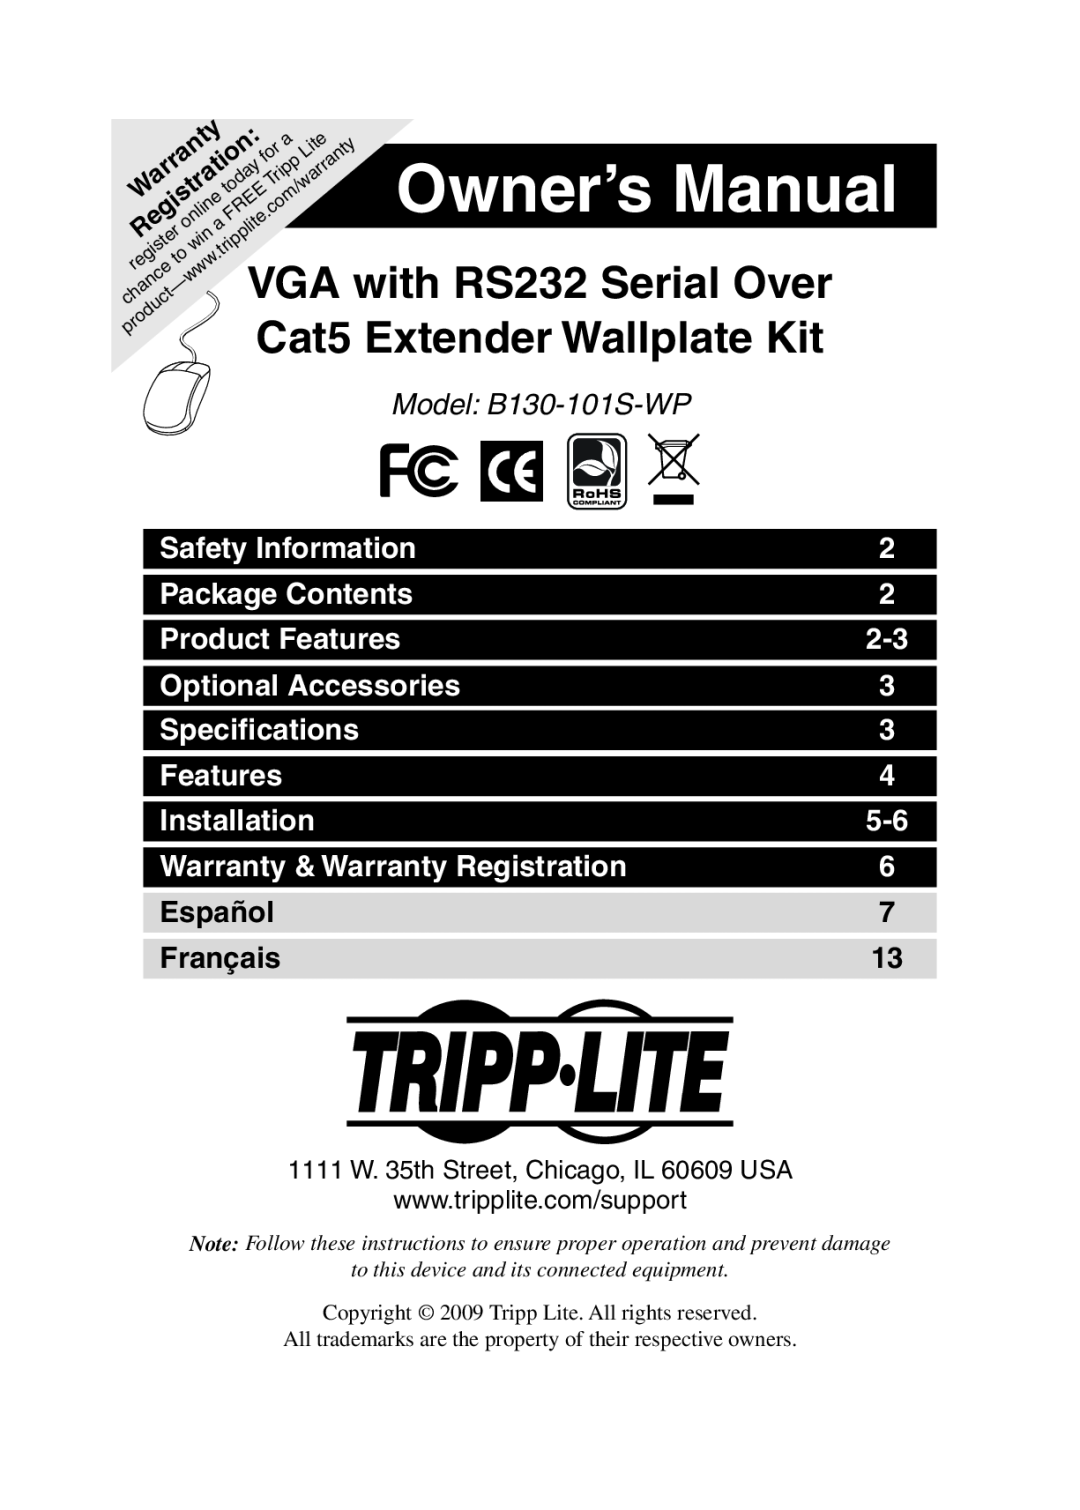 Tripp Lite owner manual Owner’s Manual, Cat5, Model B130-101S-WP 